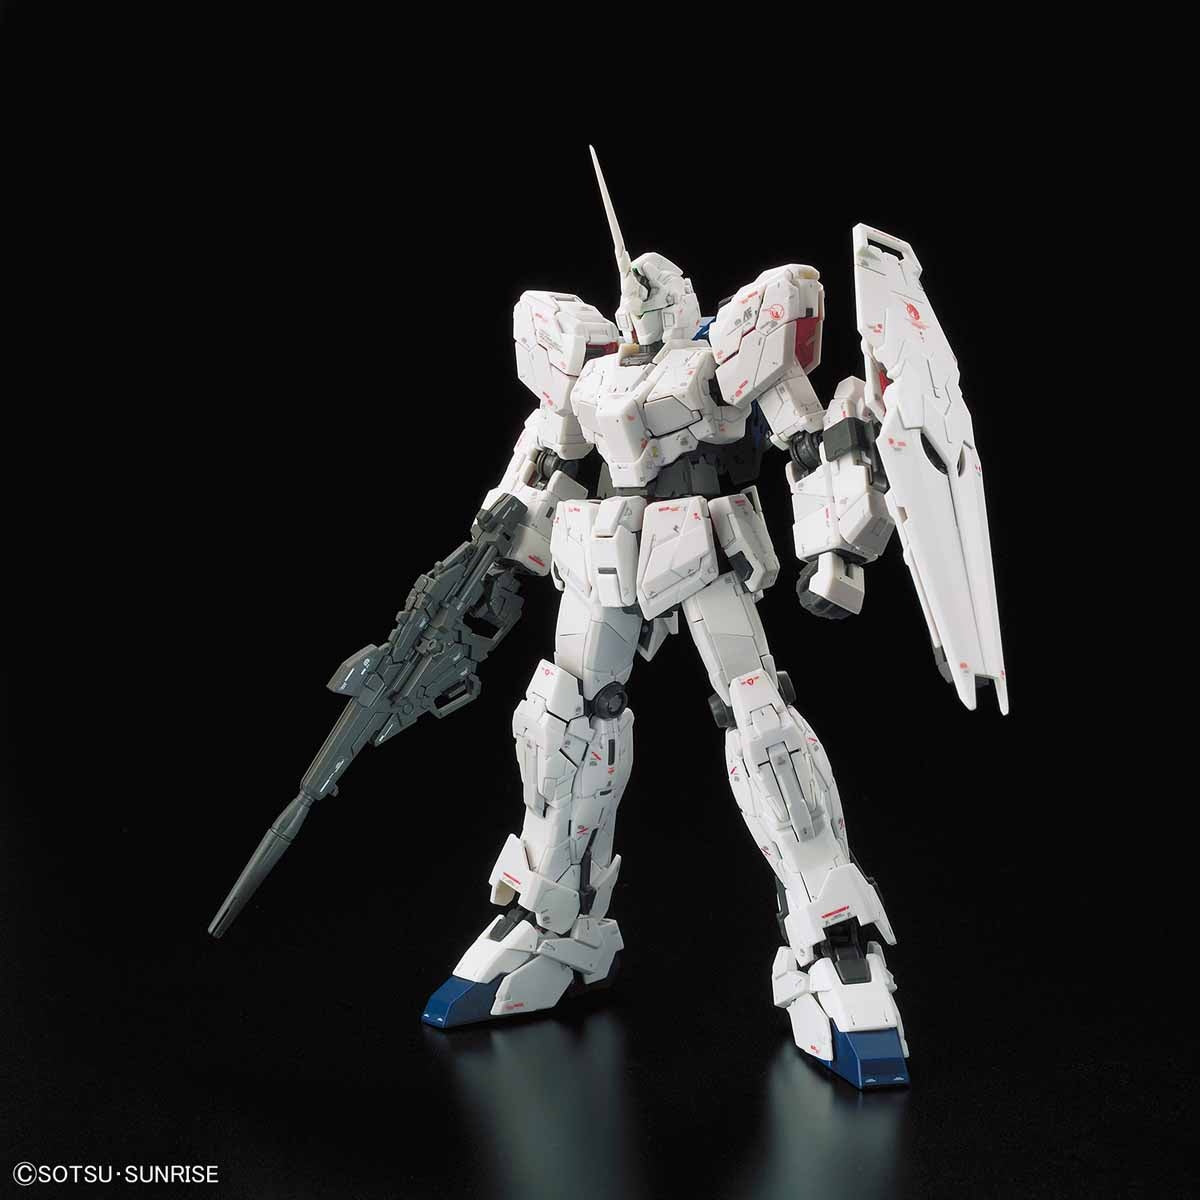 RG Unicorn Gundam